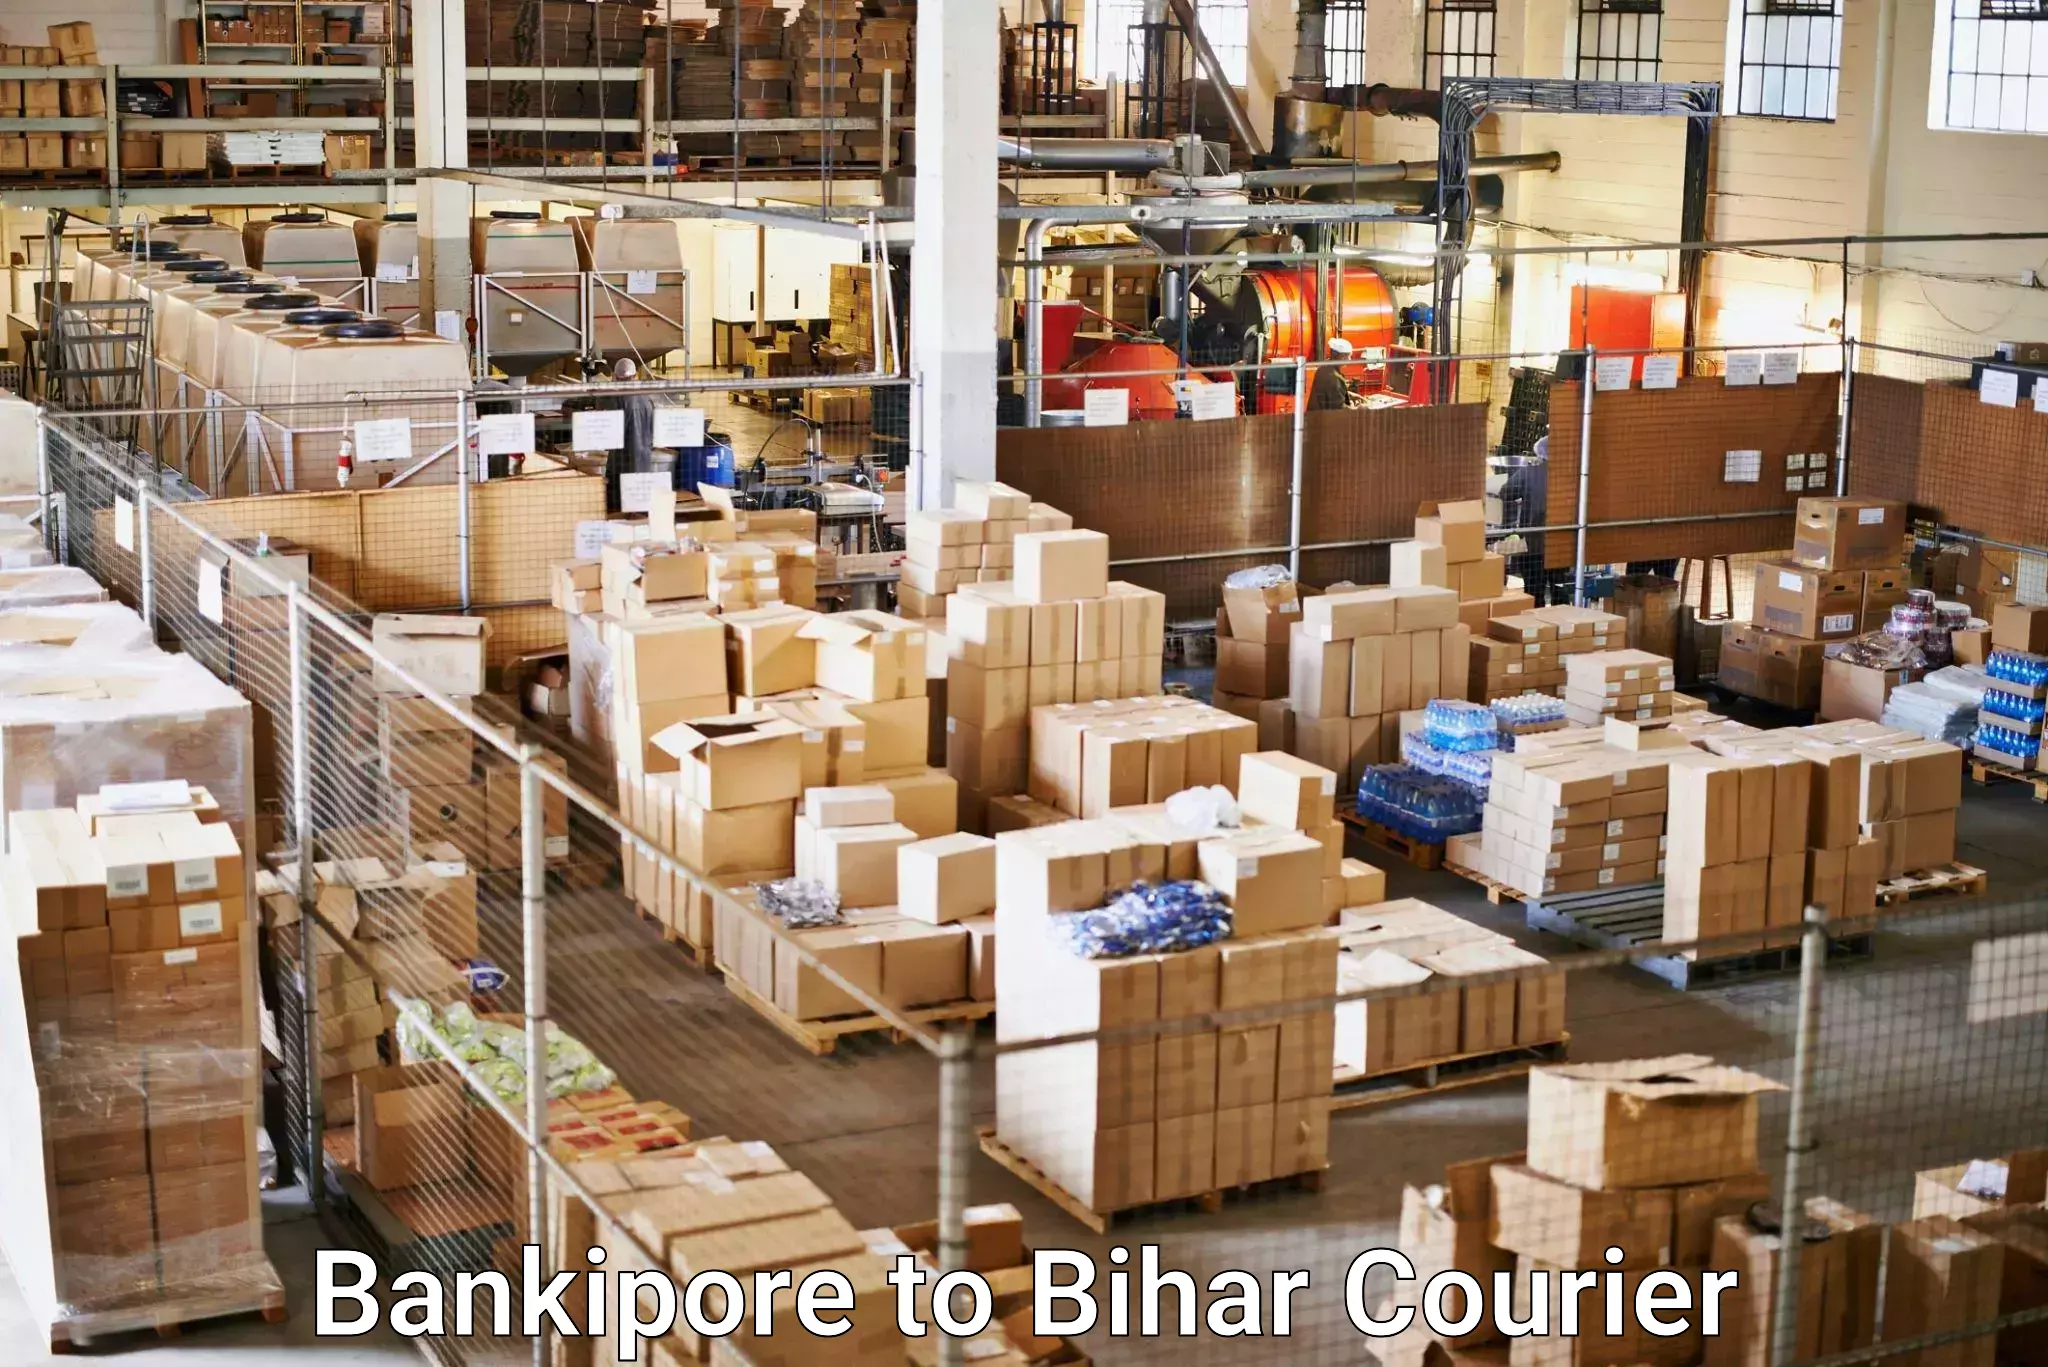 Urban courier service Bankipore to Rajpur